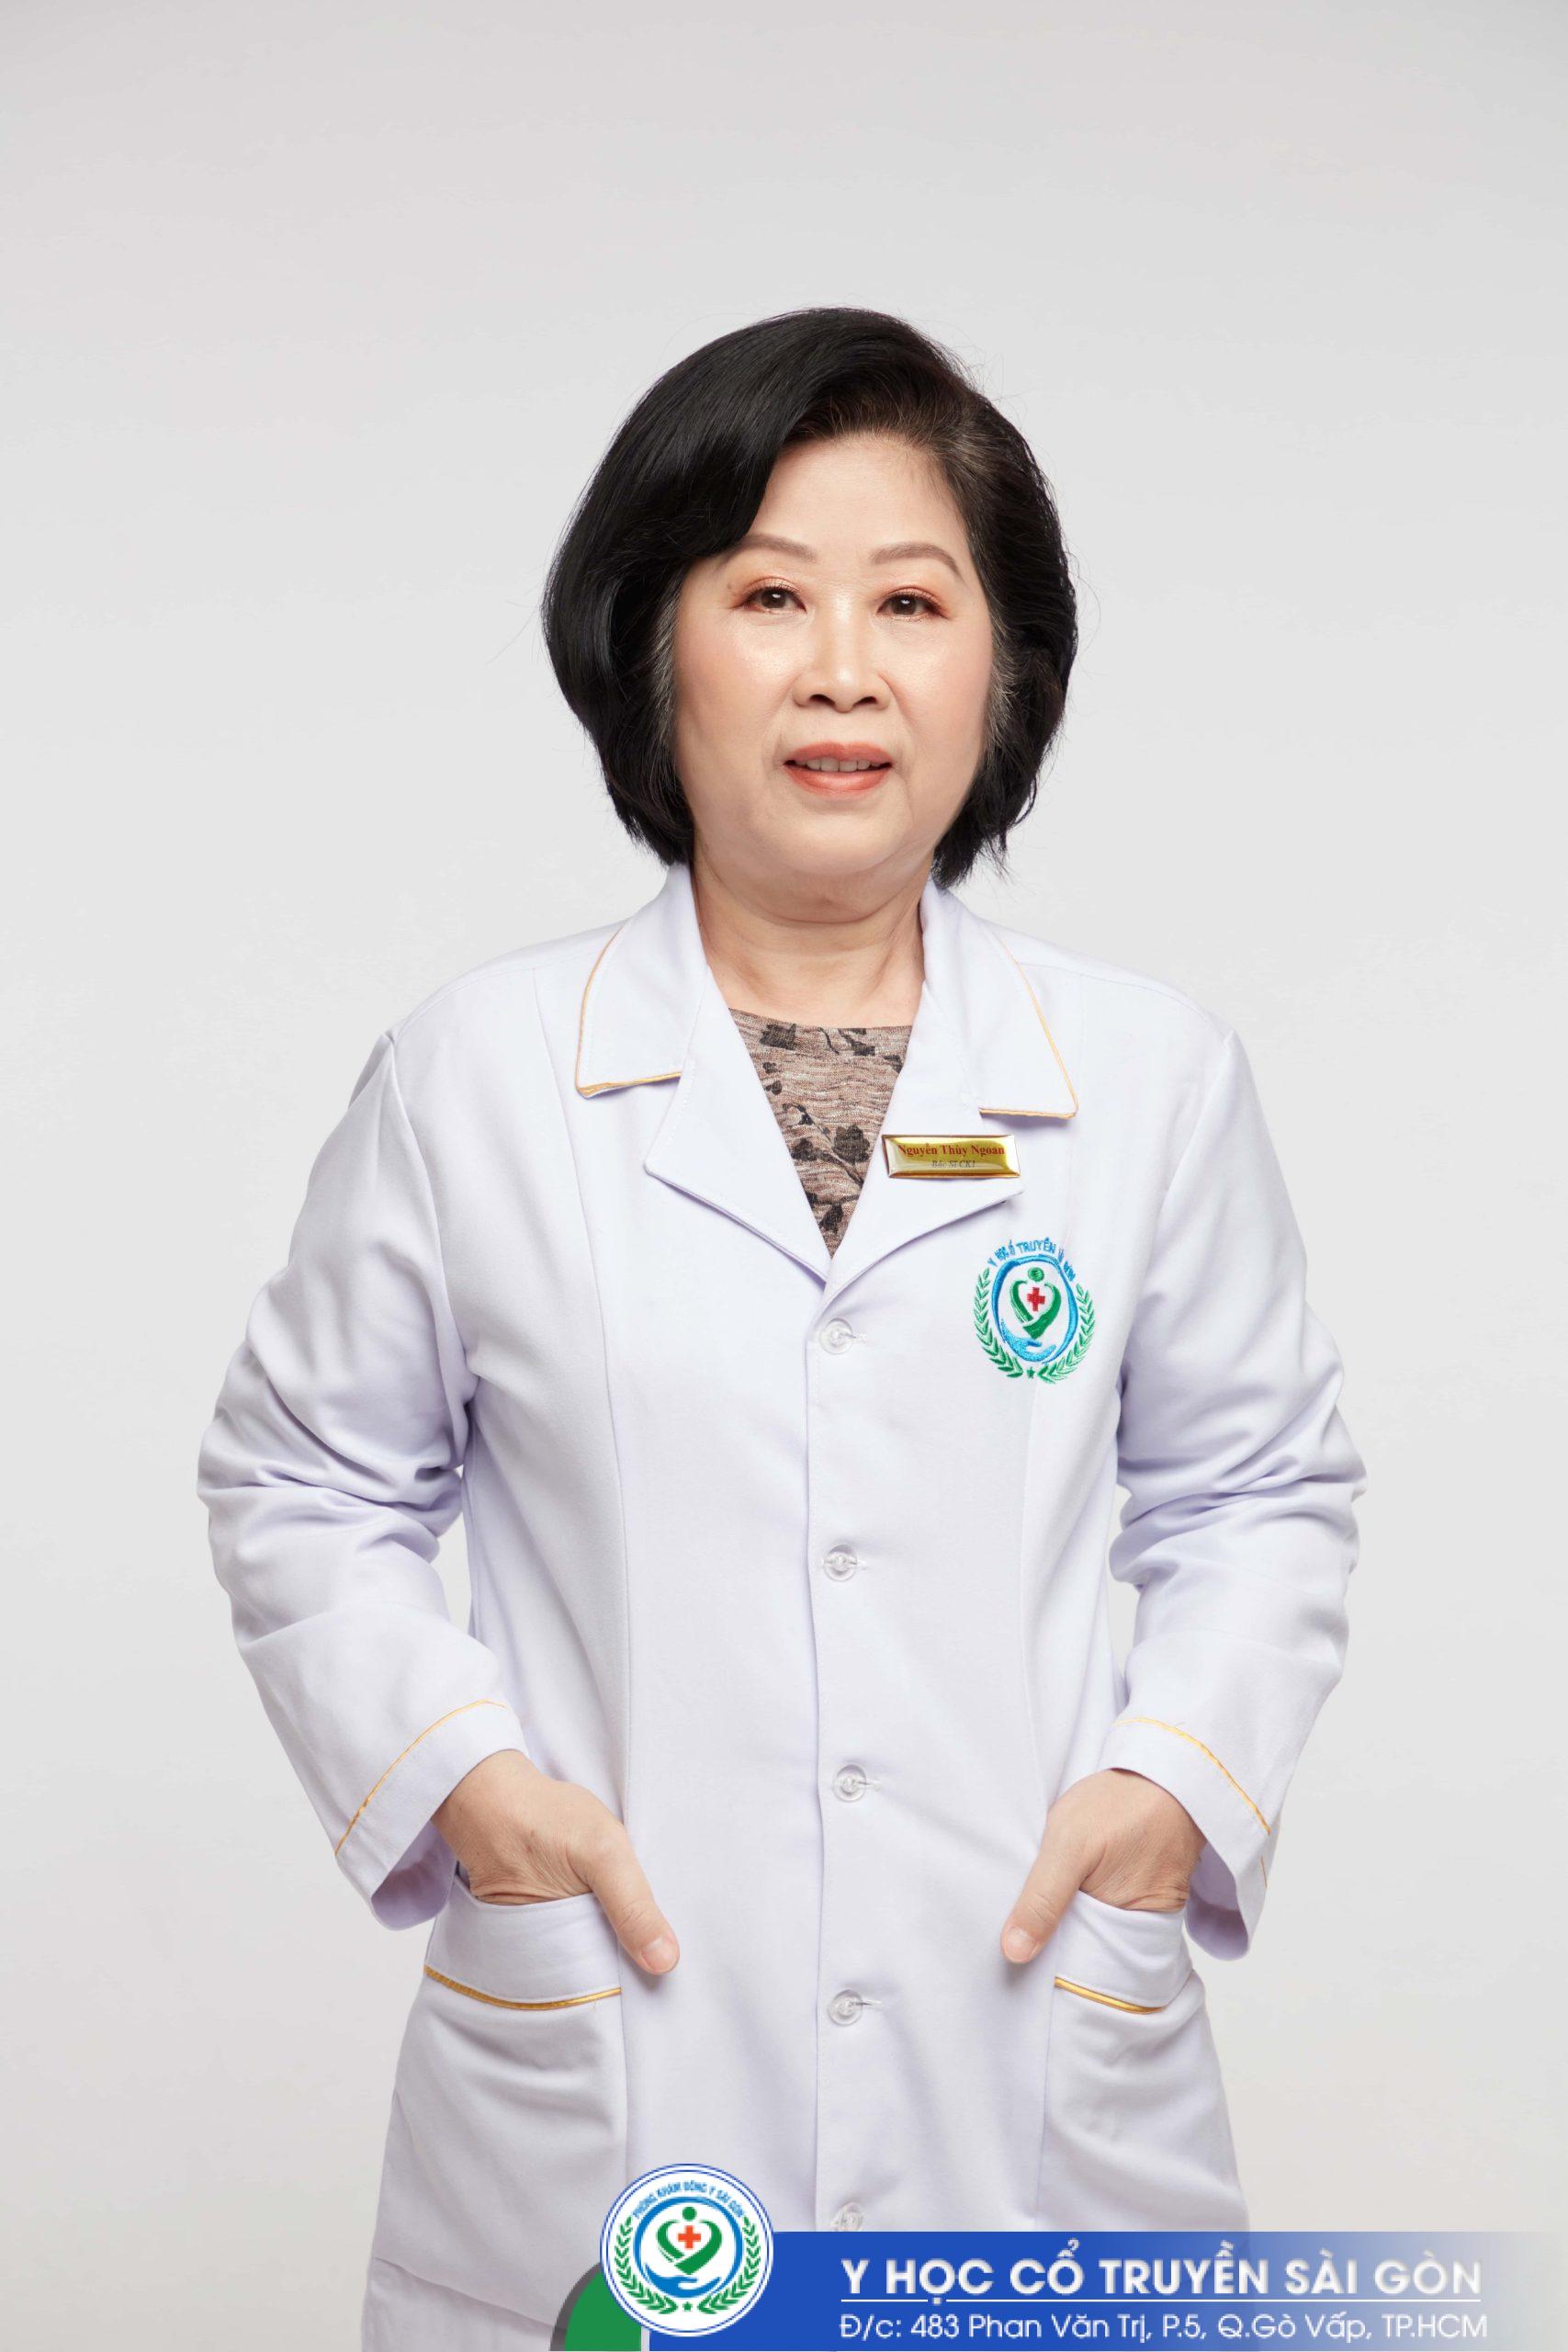 Bác sĩ Nguyễn Thùy Ngoan là bác sĩ chữa bệnh nám da giỏi tại TPHCM